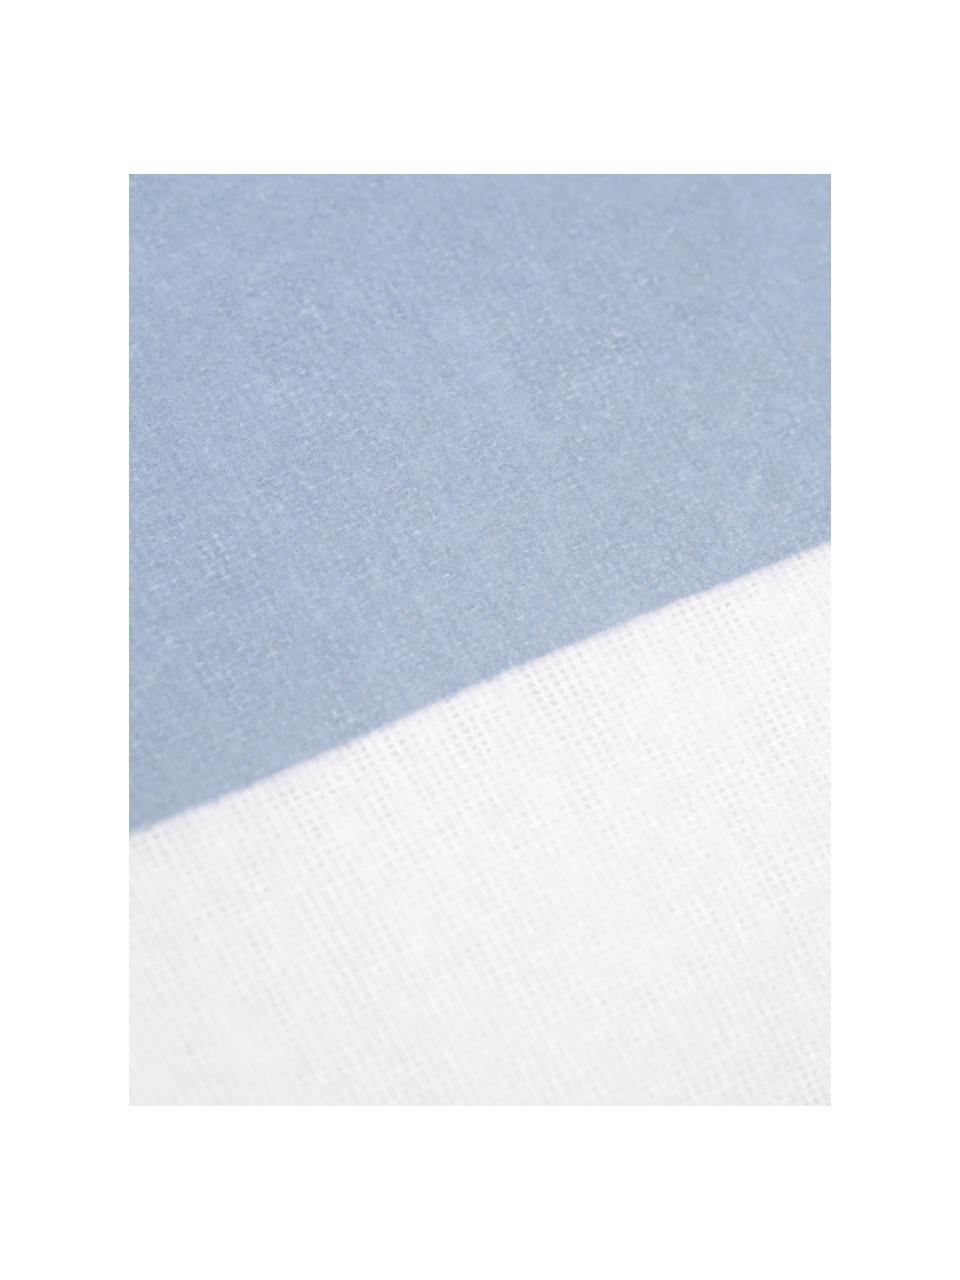 Dwustronna poszewka na poduszkę z flaneli Dora, 2 szt., Biały, jasny niebieski, S 40 x D 80 cm